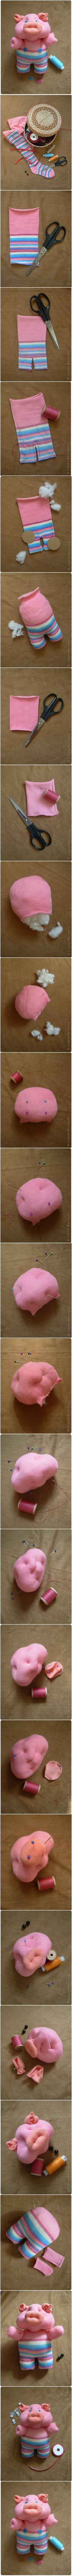 How to DIY Cute Sock Piglet